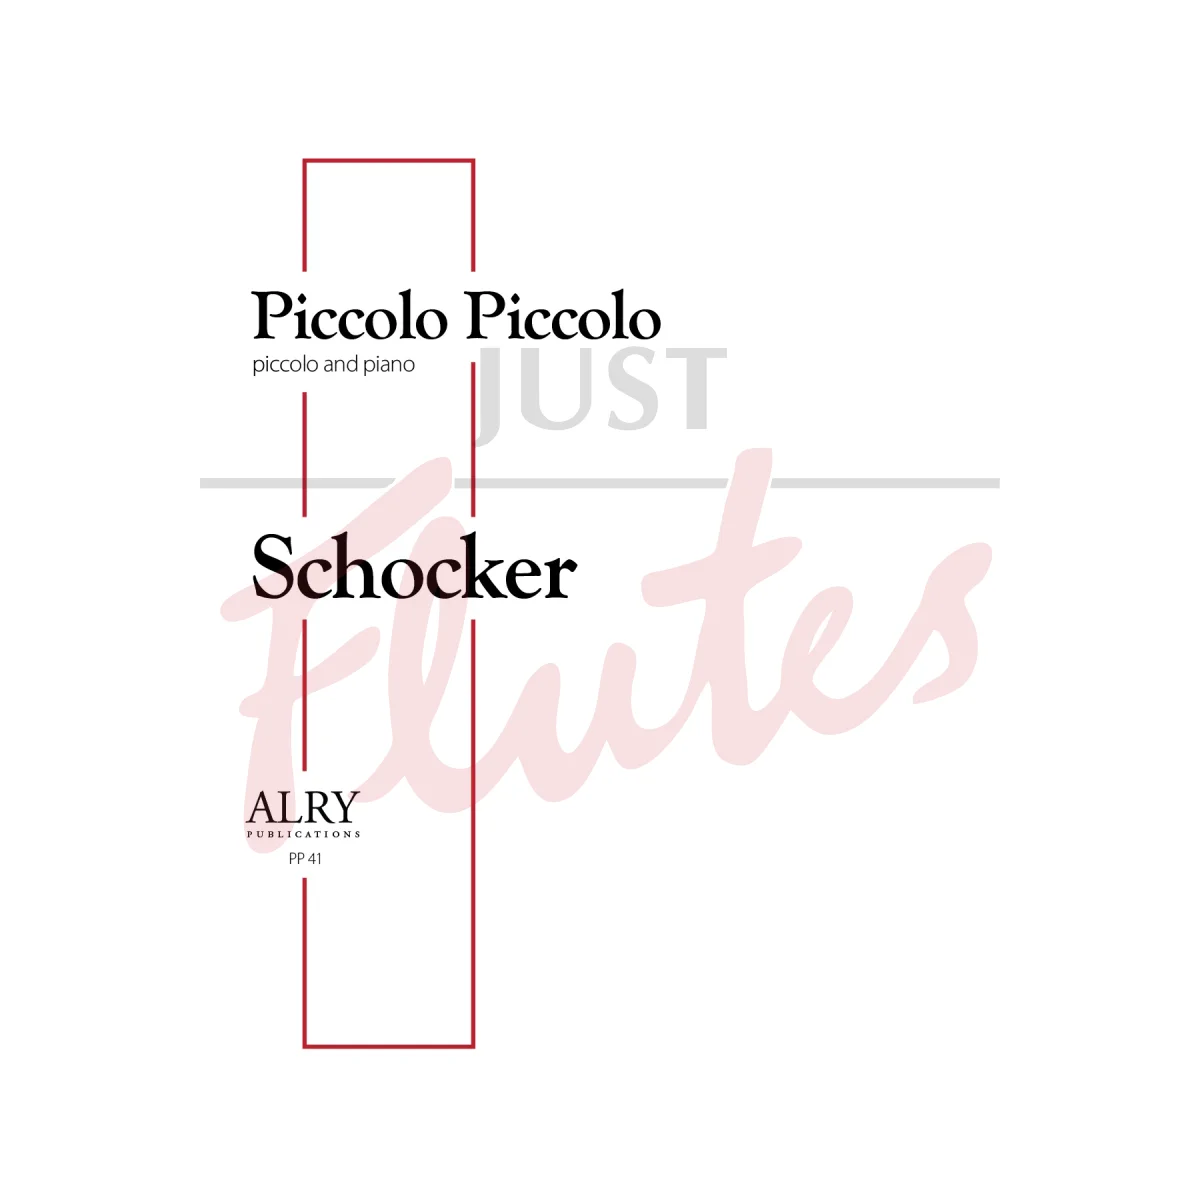 Piccolo Piccolo for Piccolo and Piano